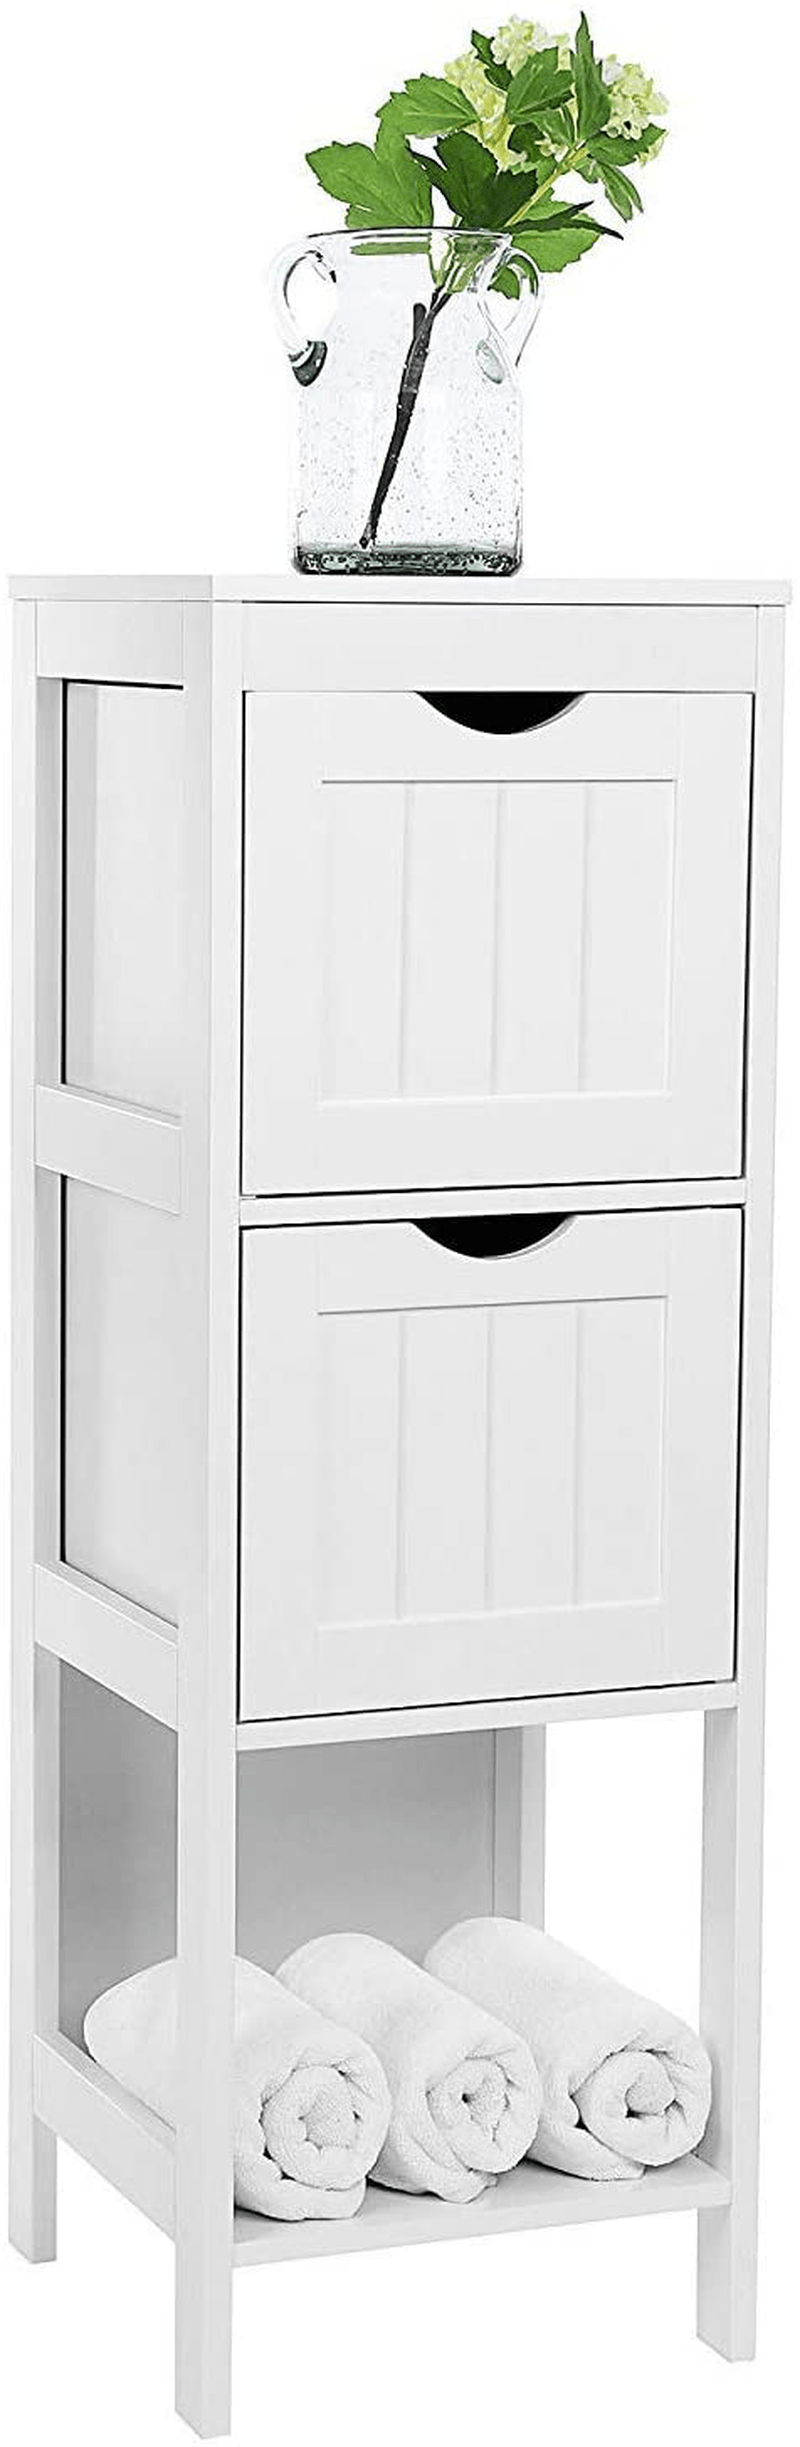 VASAGLE Floor Cabinet Multifunctional Bathroom Storage Organizer Rack Stand, 2 Drawers, White Home & Garden > Household Supplies > Storage & Organization VASAGLE   